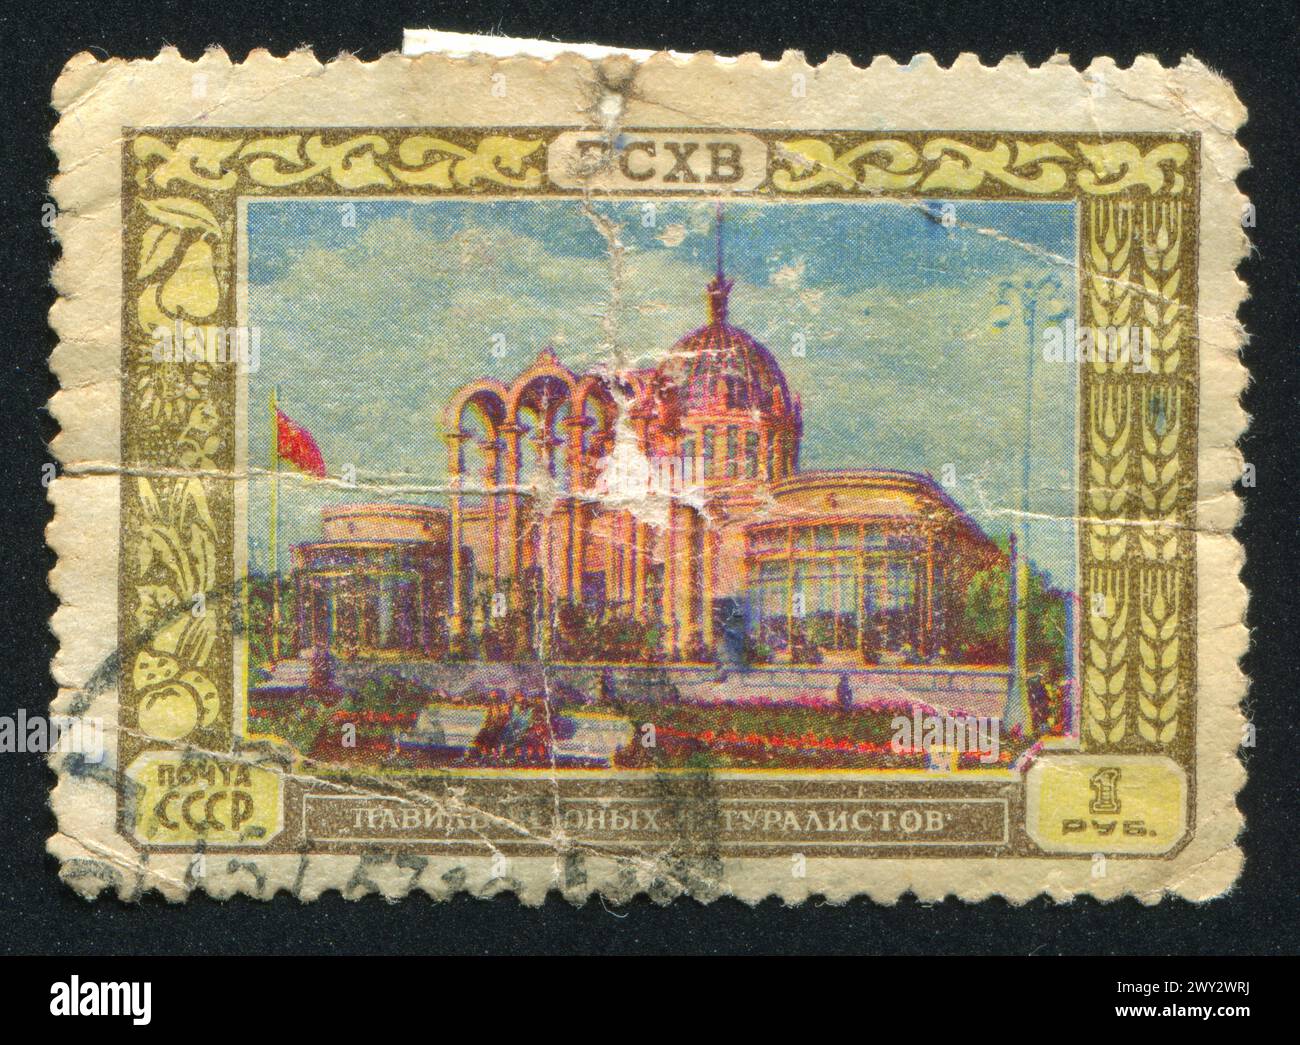 RUSSLAND - CA. 1956: Briefmarke gedruckt von Russland, zeigt junge Naturalisten, Pavillon, ca. 1956 Stockfoto